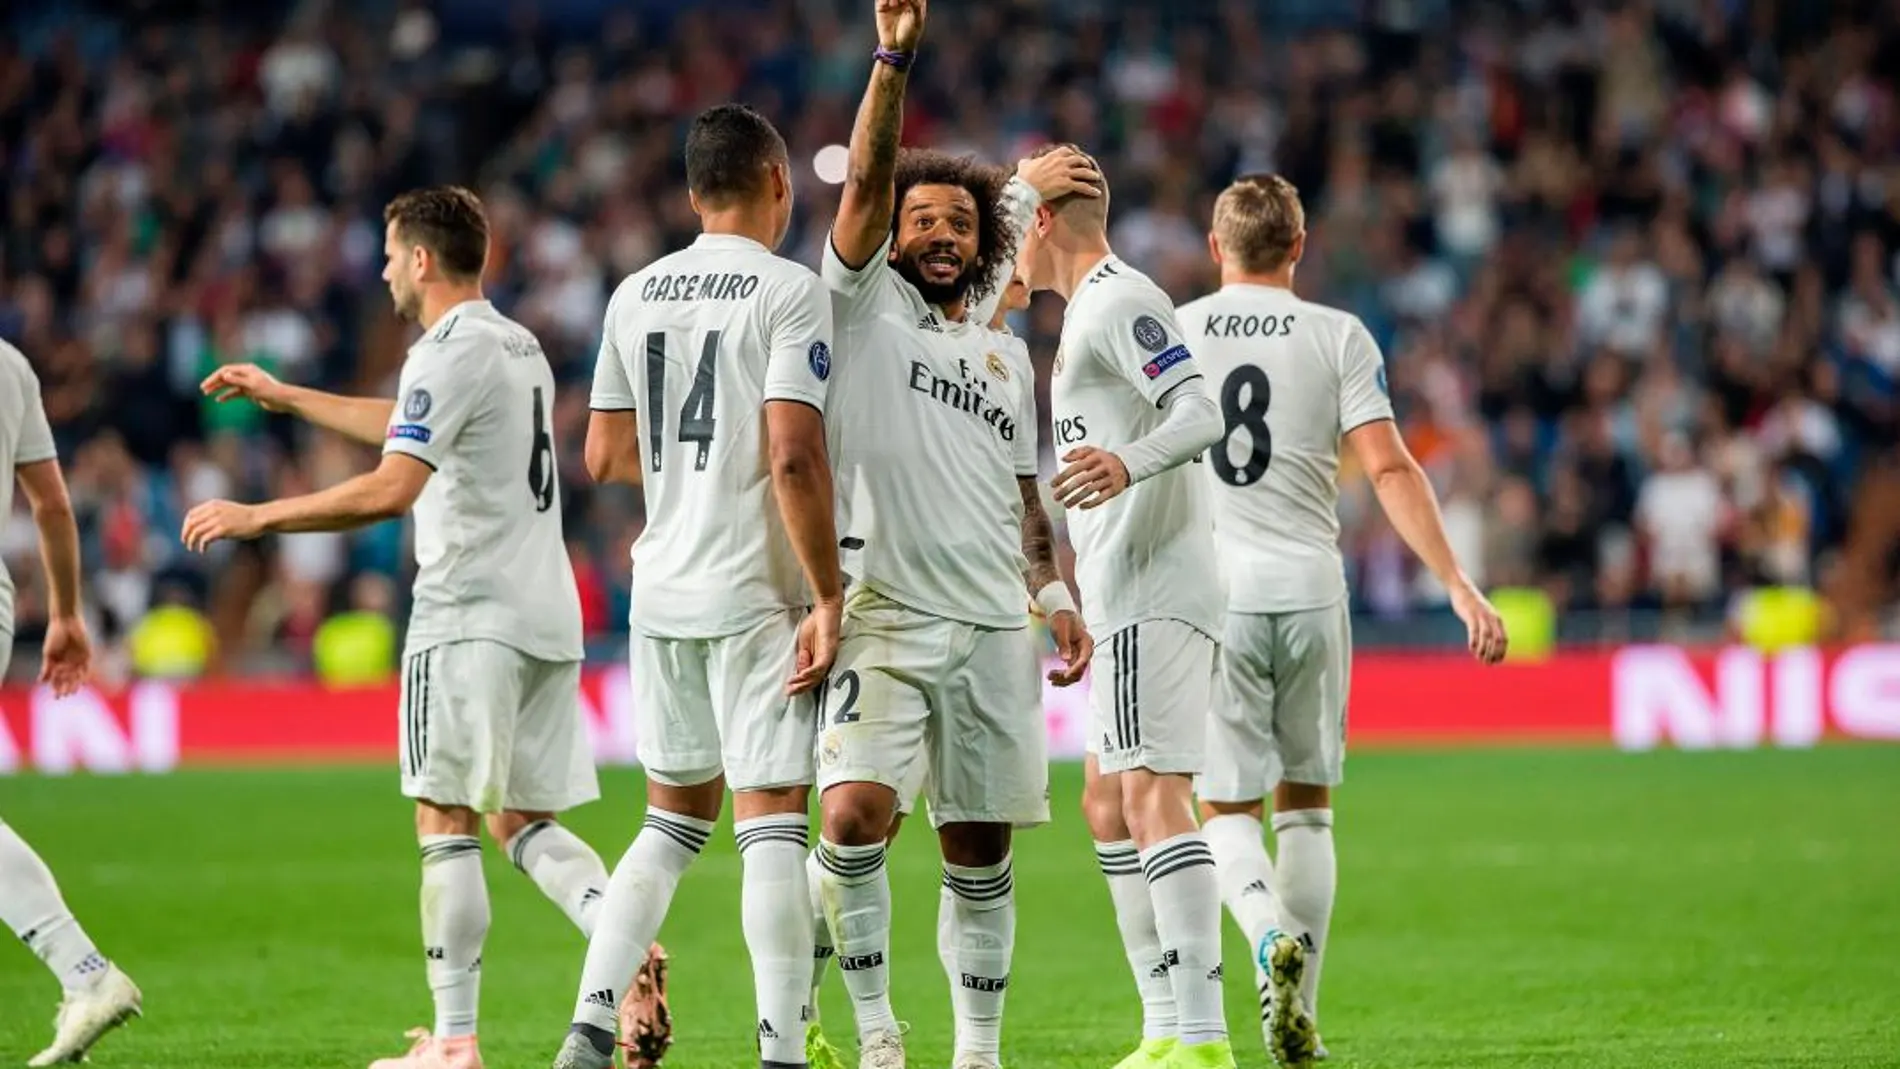 El lateral brasileño del Real Madrid Marcelo celebra tras marcar un gol. EFE/Rodrigo Jiménez